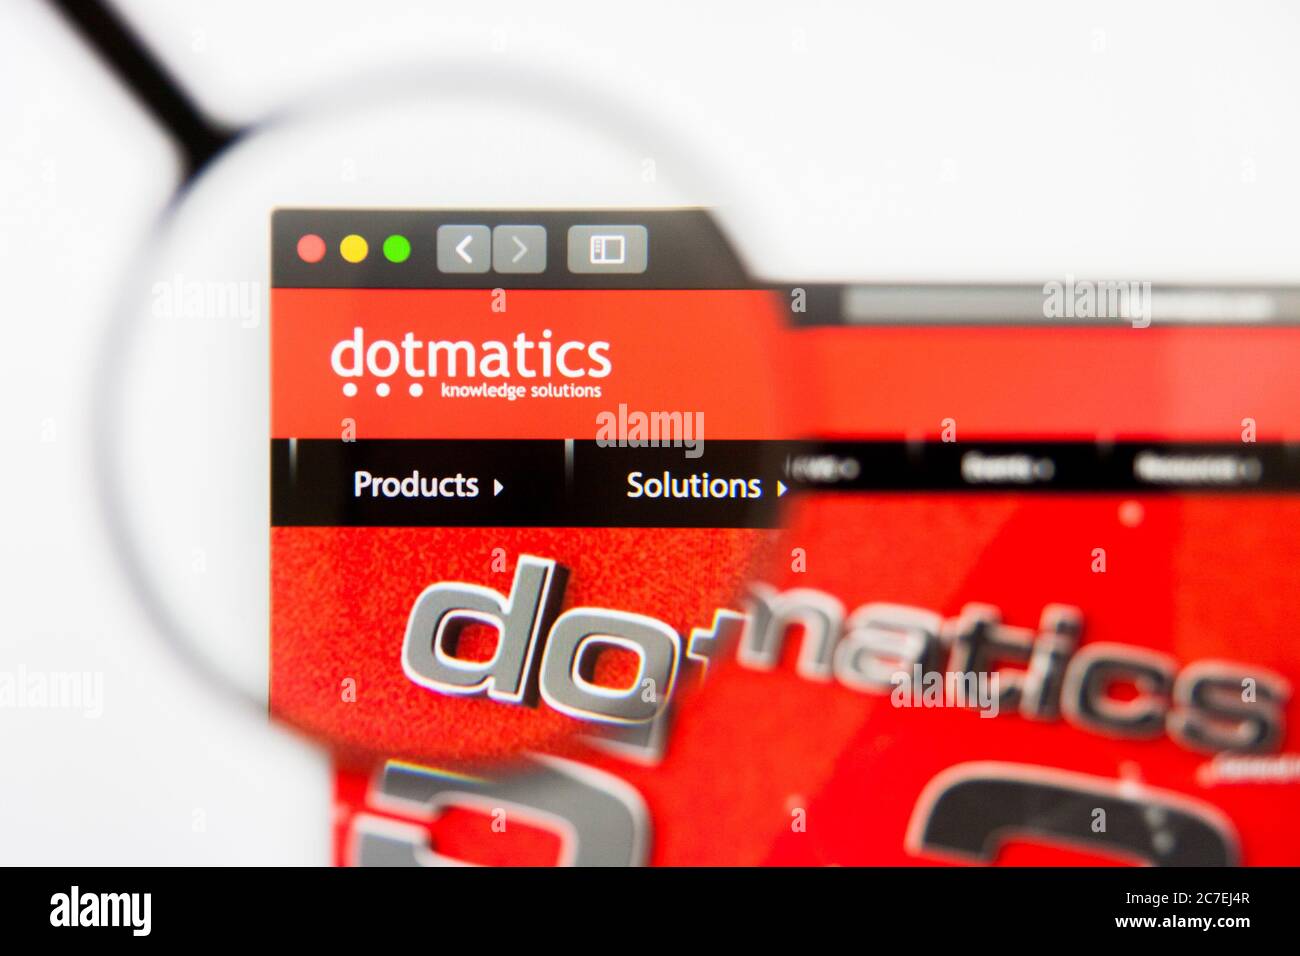 Los Angeles, California, USA - 29. März 2019: Illustrative Editorial der Dotmatics Website Homepage. Dotmatics Logo auf dem Display sichtbar. Stockfoto